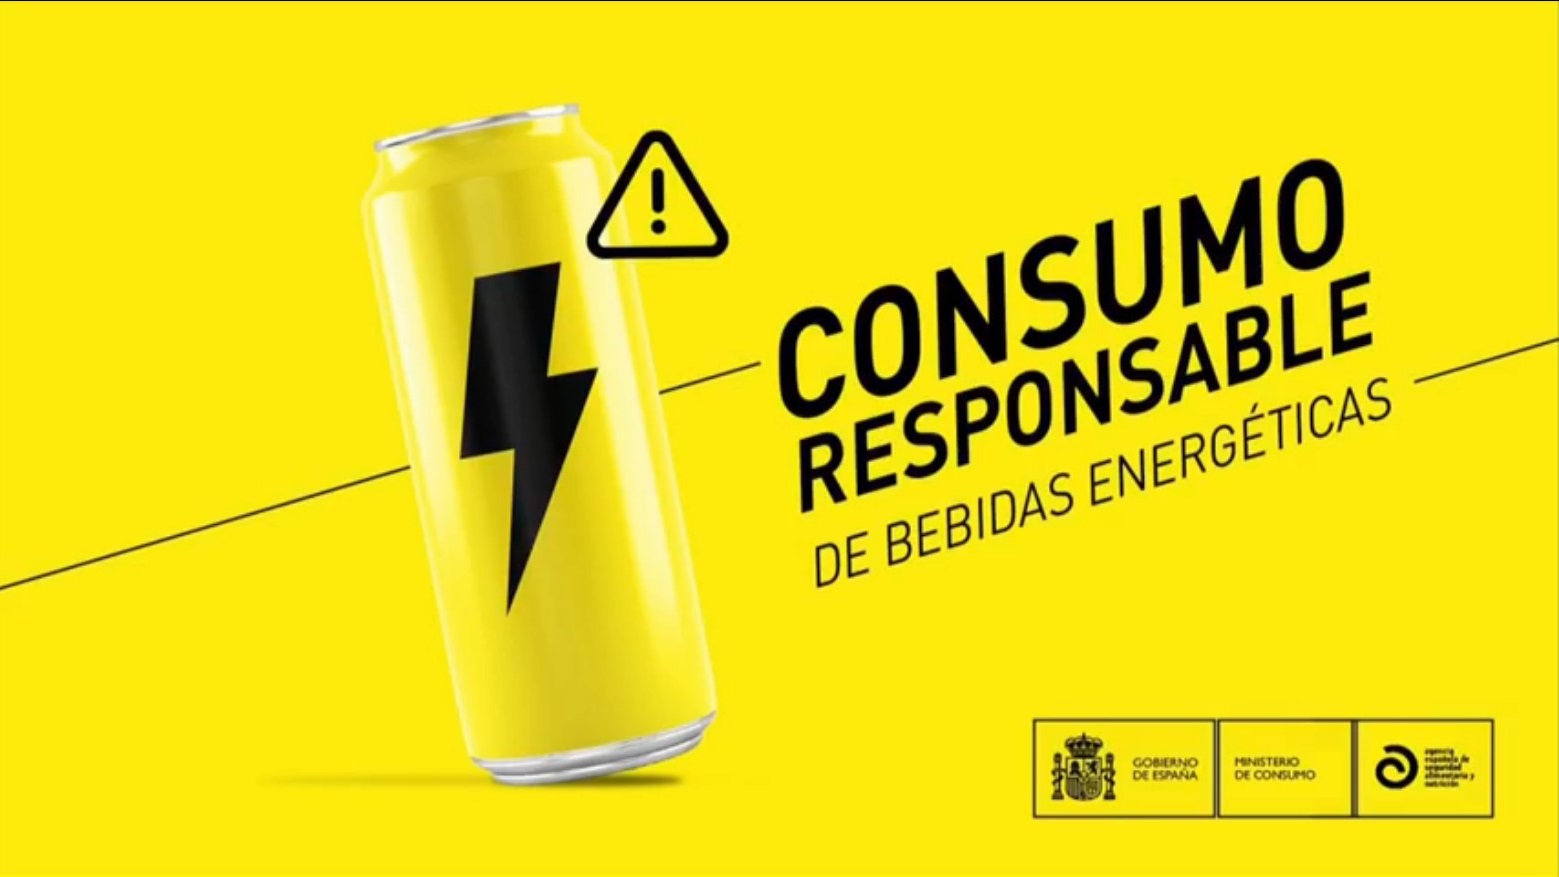 El Ministro de Consumo presenta el informe del Comité Científico de la AESAN sobre bebidas energéticas